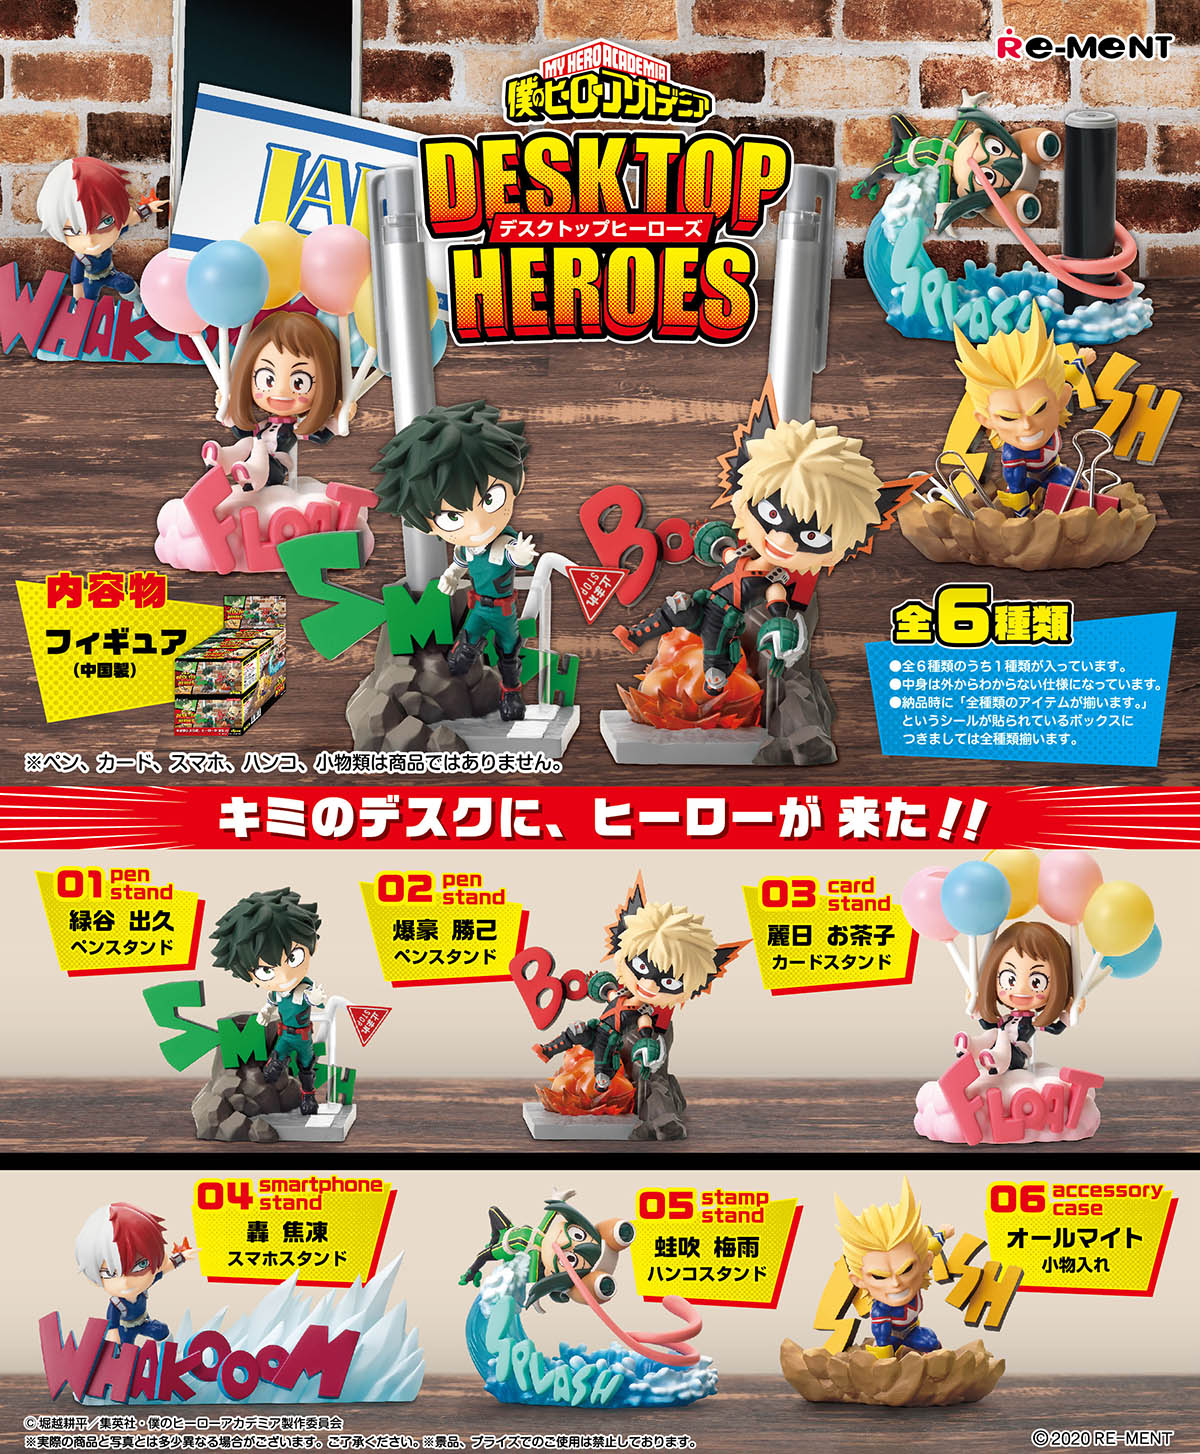 ヒロアカ『僕のヒーローアカデミア DESKTOP HEROES』6個入りBOX-001